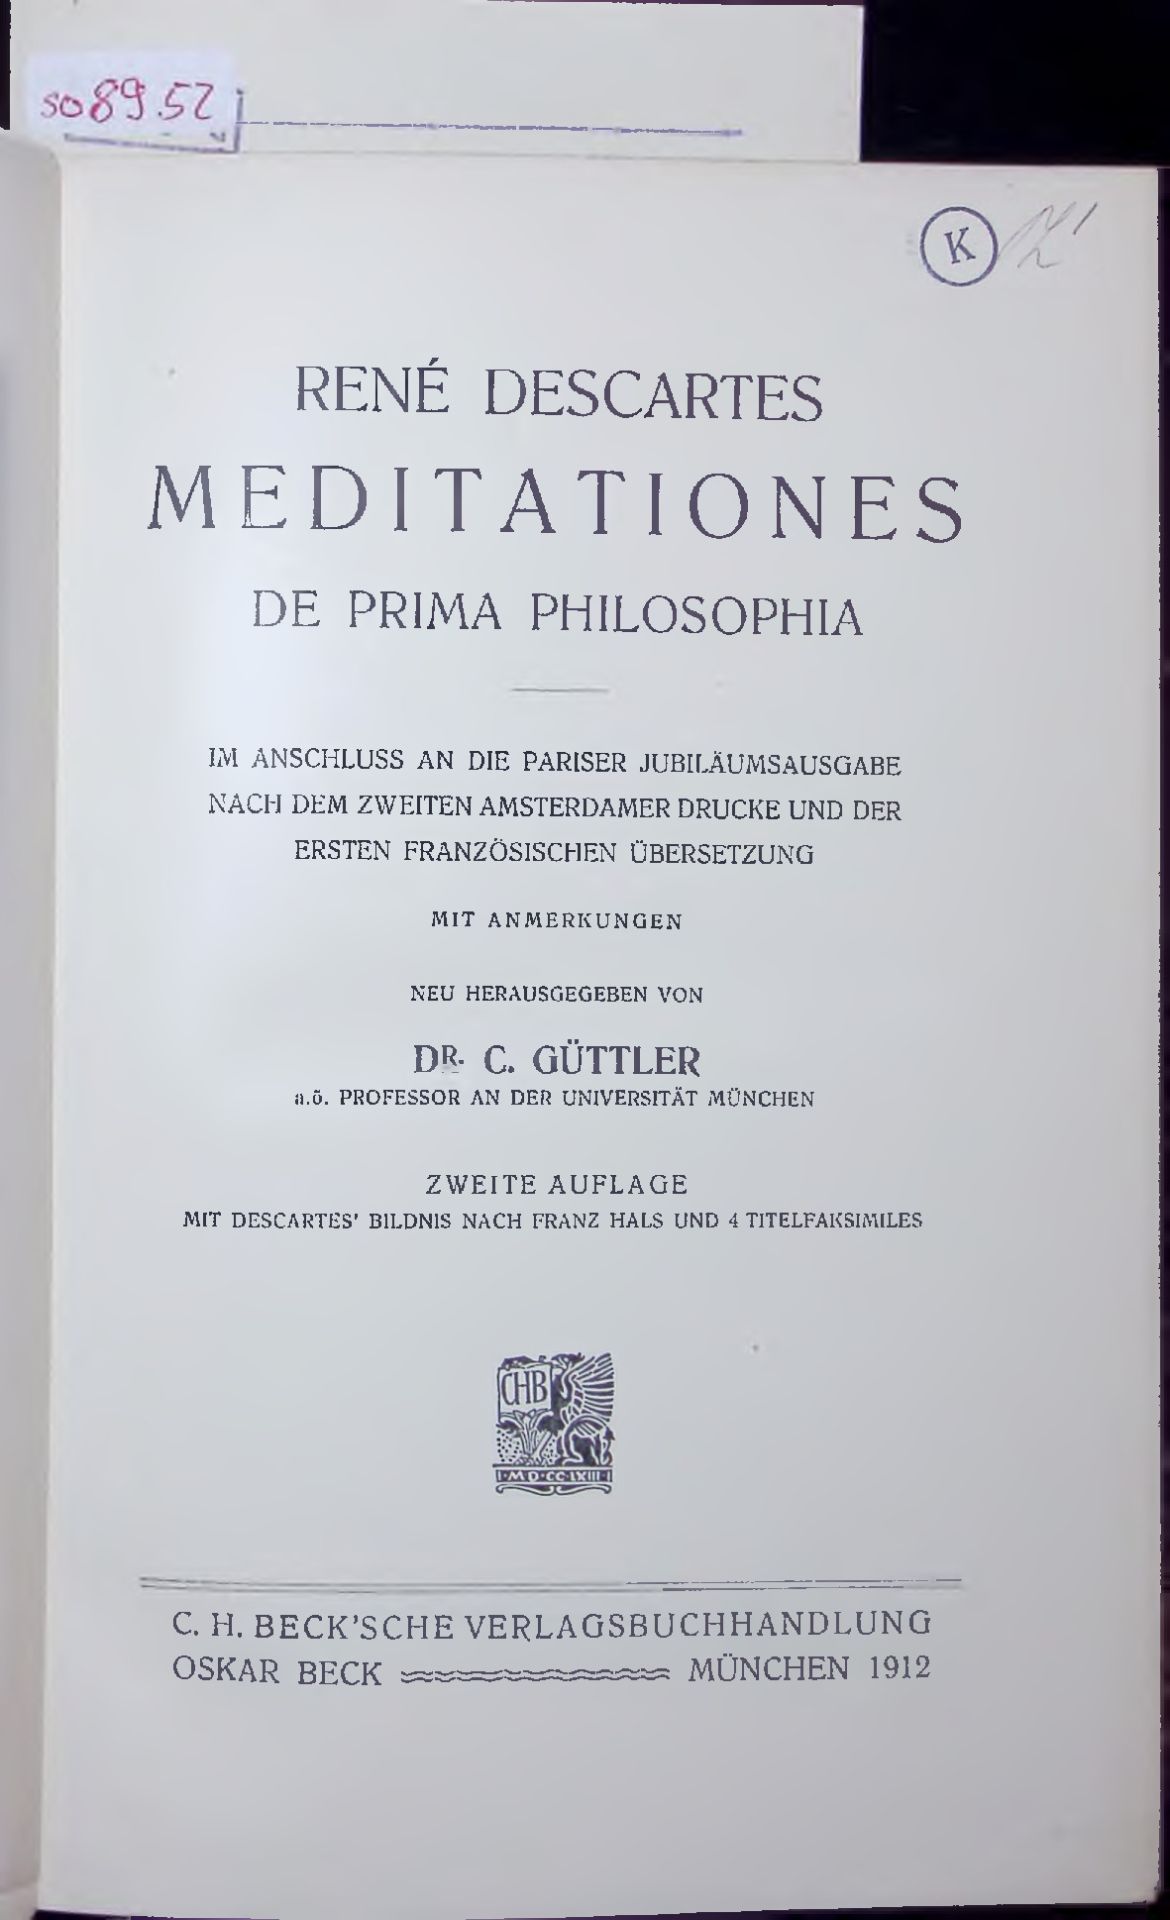 MEDITATIONES. DE PRIMA PHILOSOPHIA - DESCARTES, RENÉ